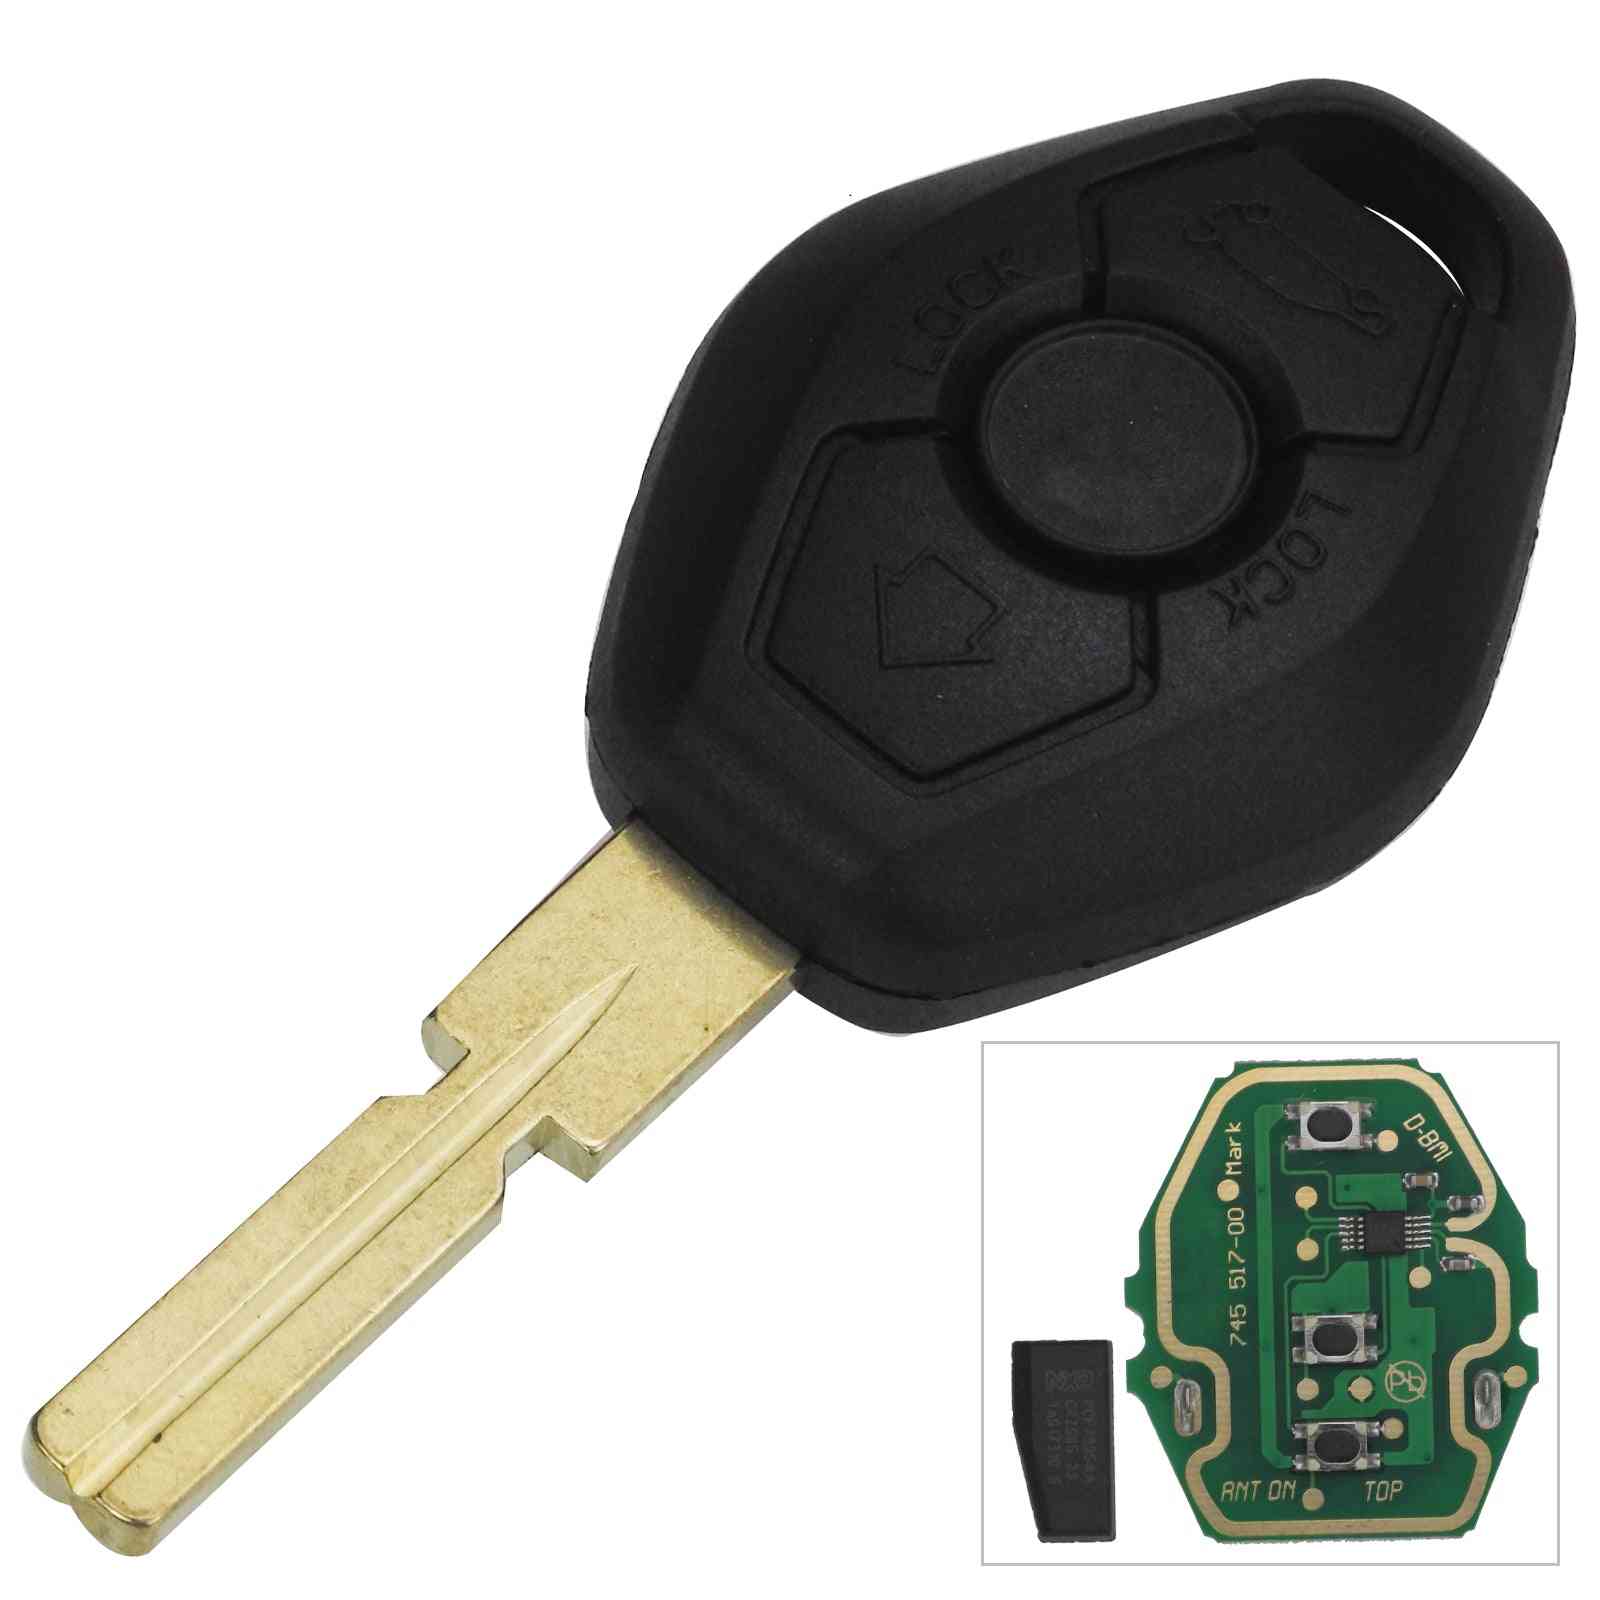 Trasmettitore di accesso senza chiave con chip id44, chiave remota per auto